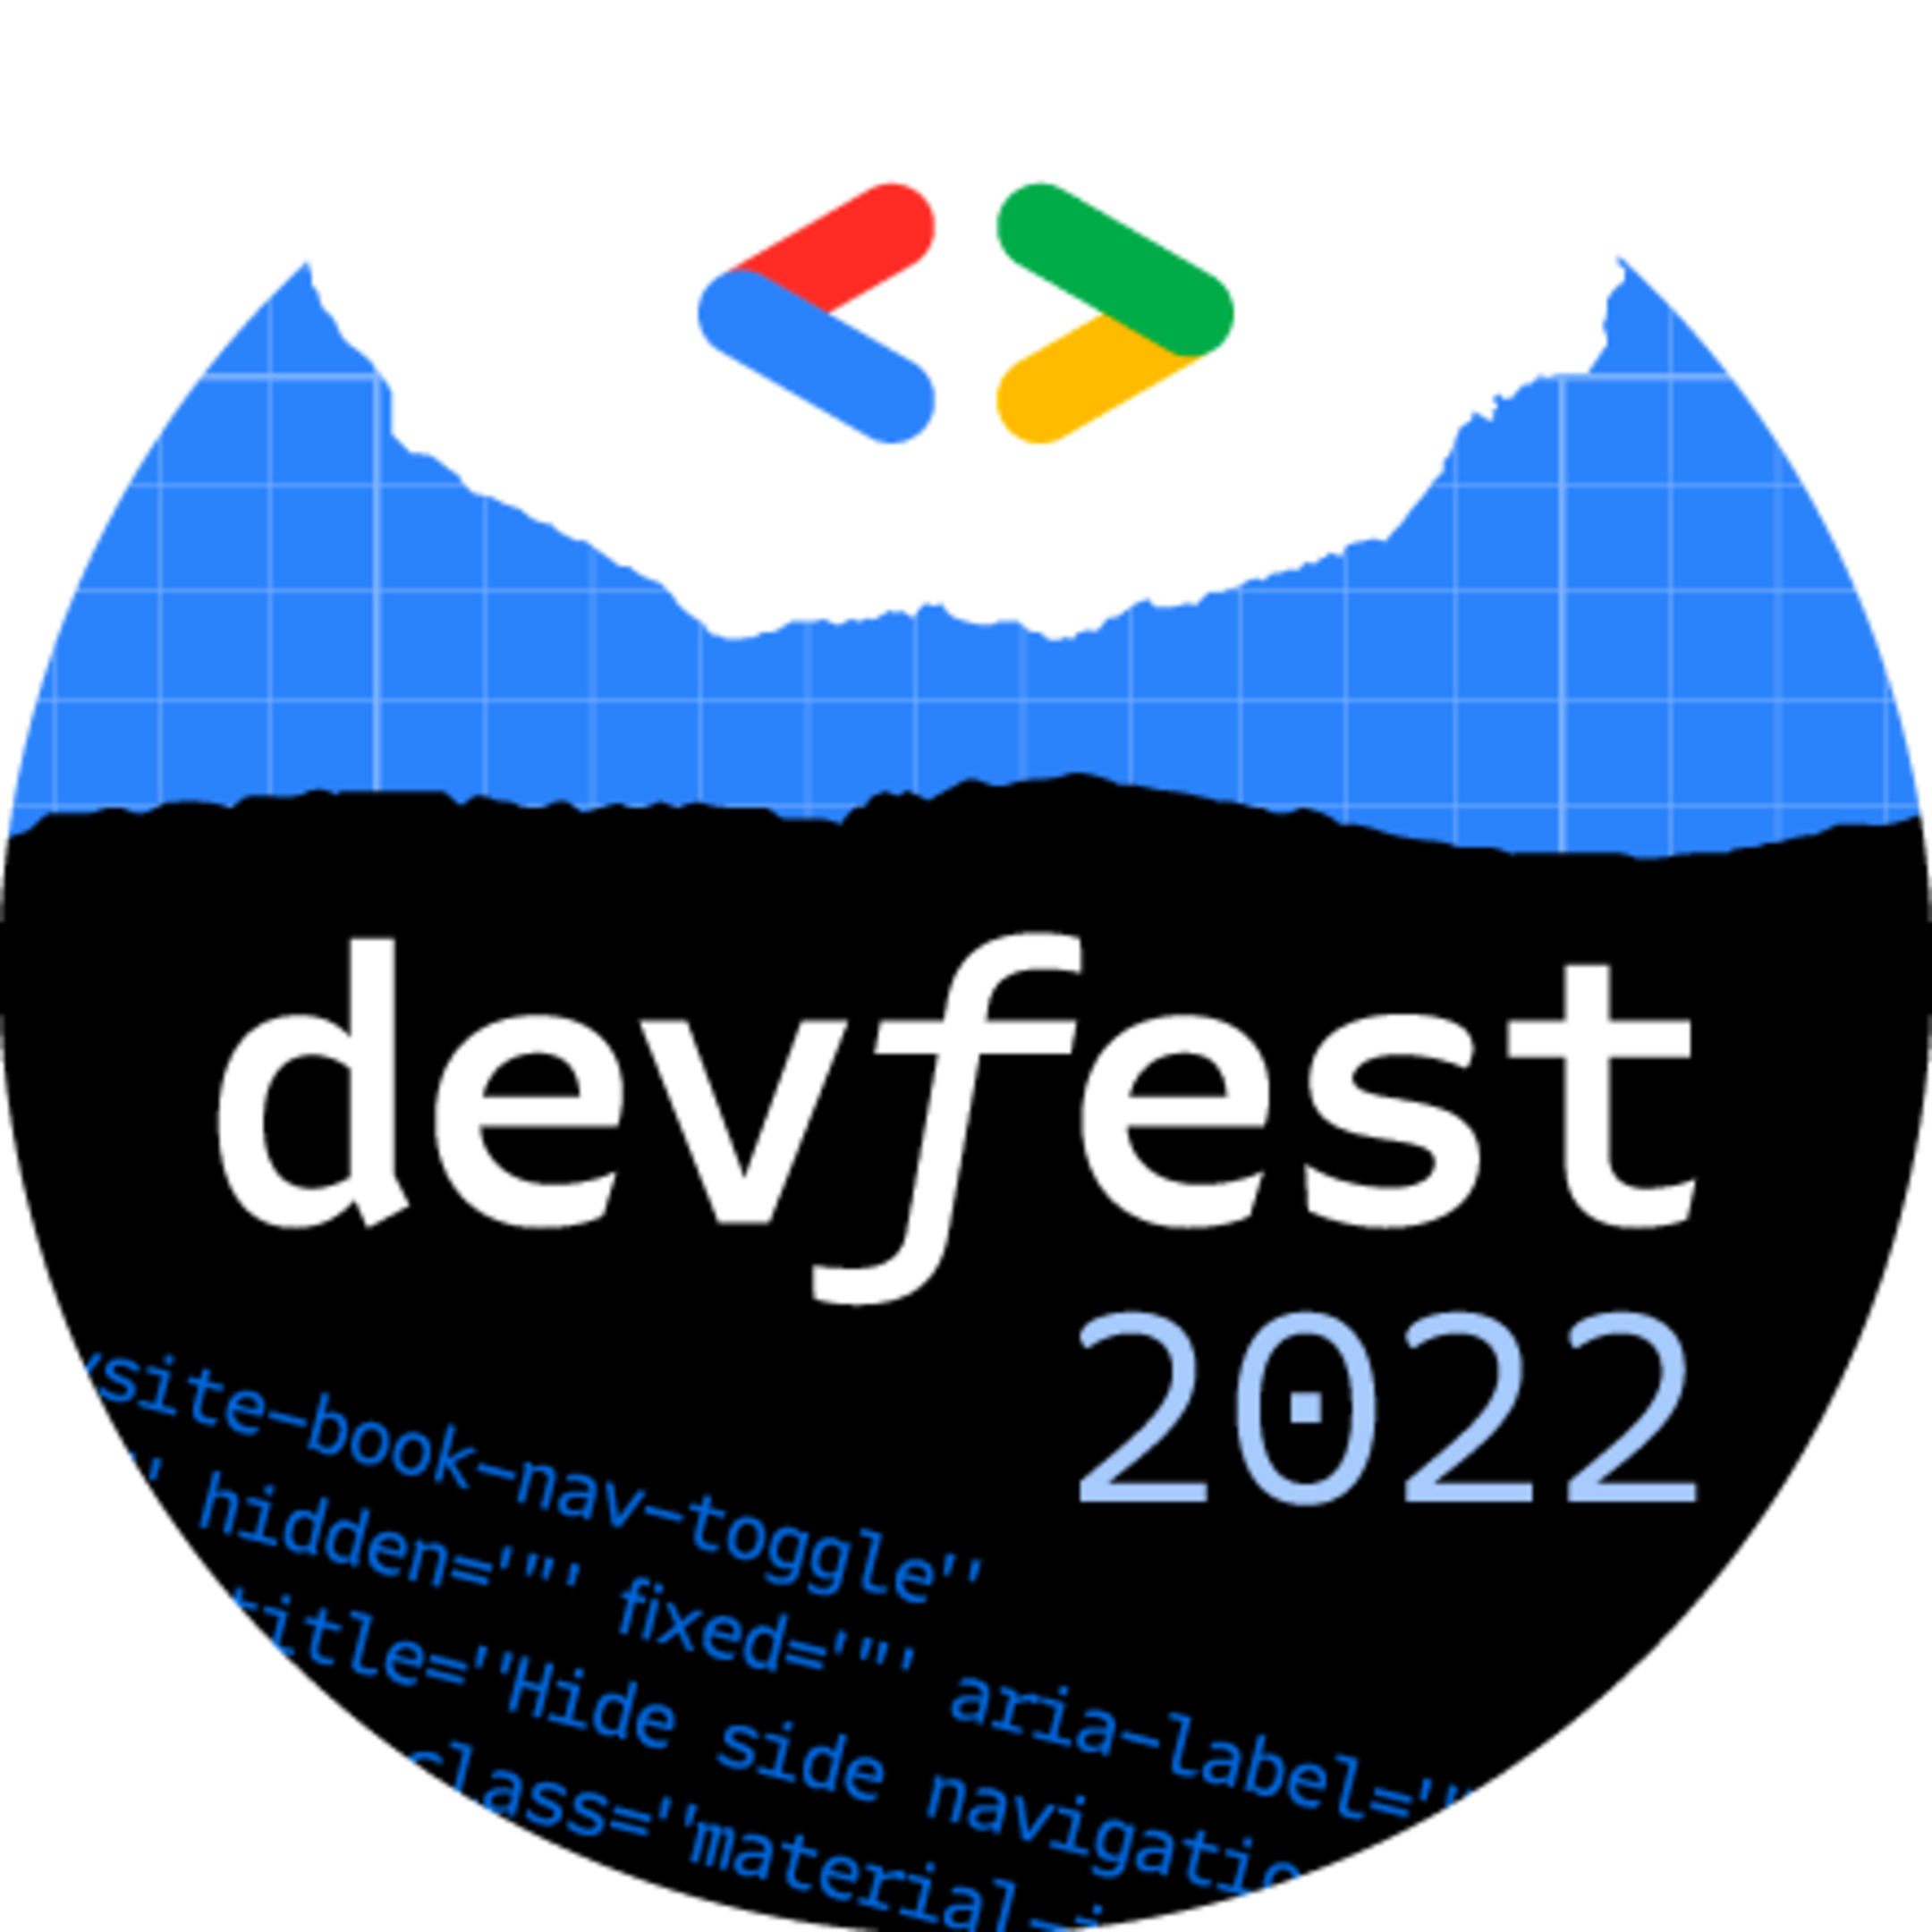 Google Dev Fest